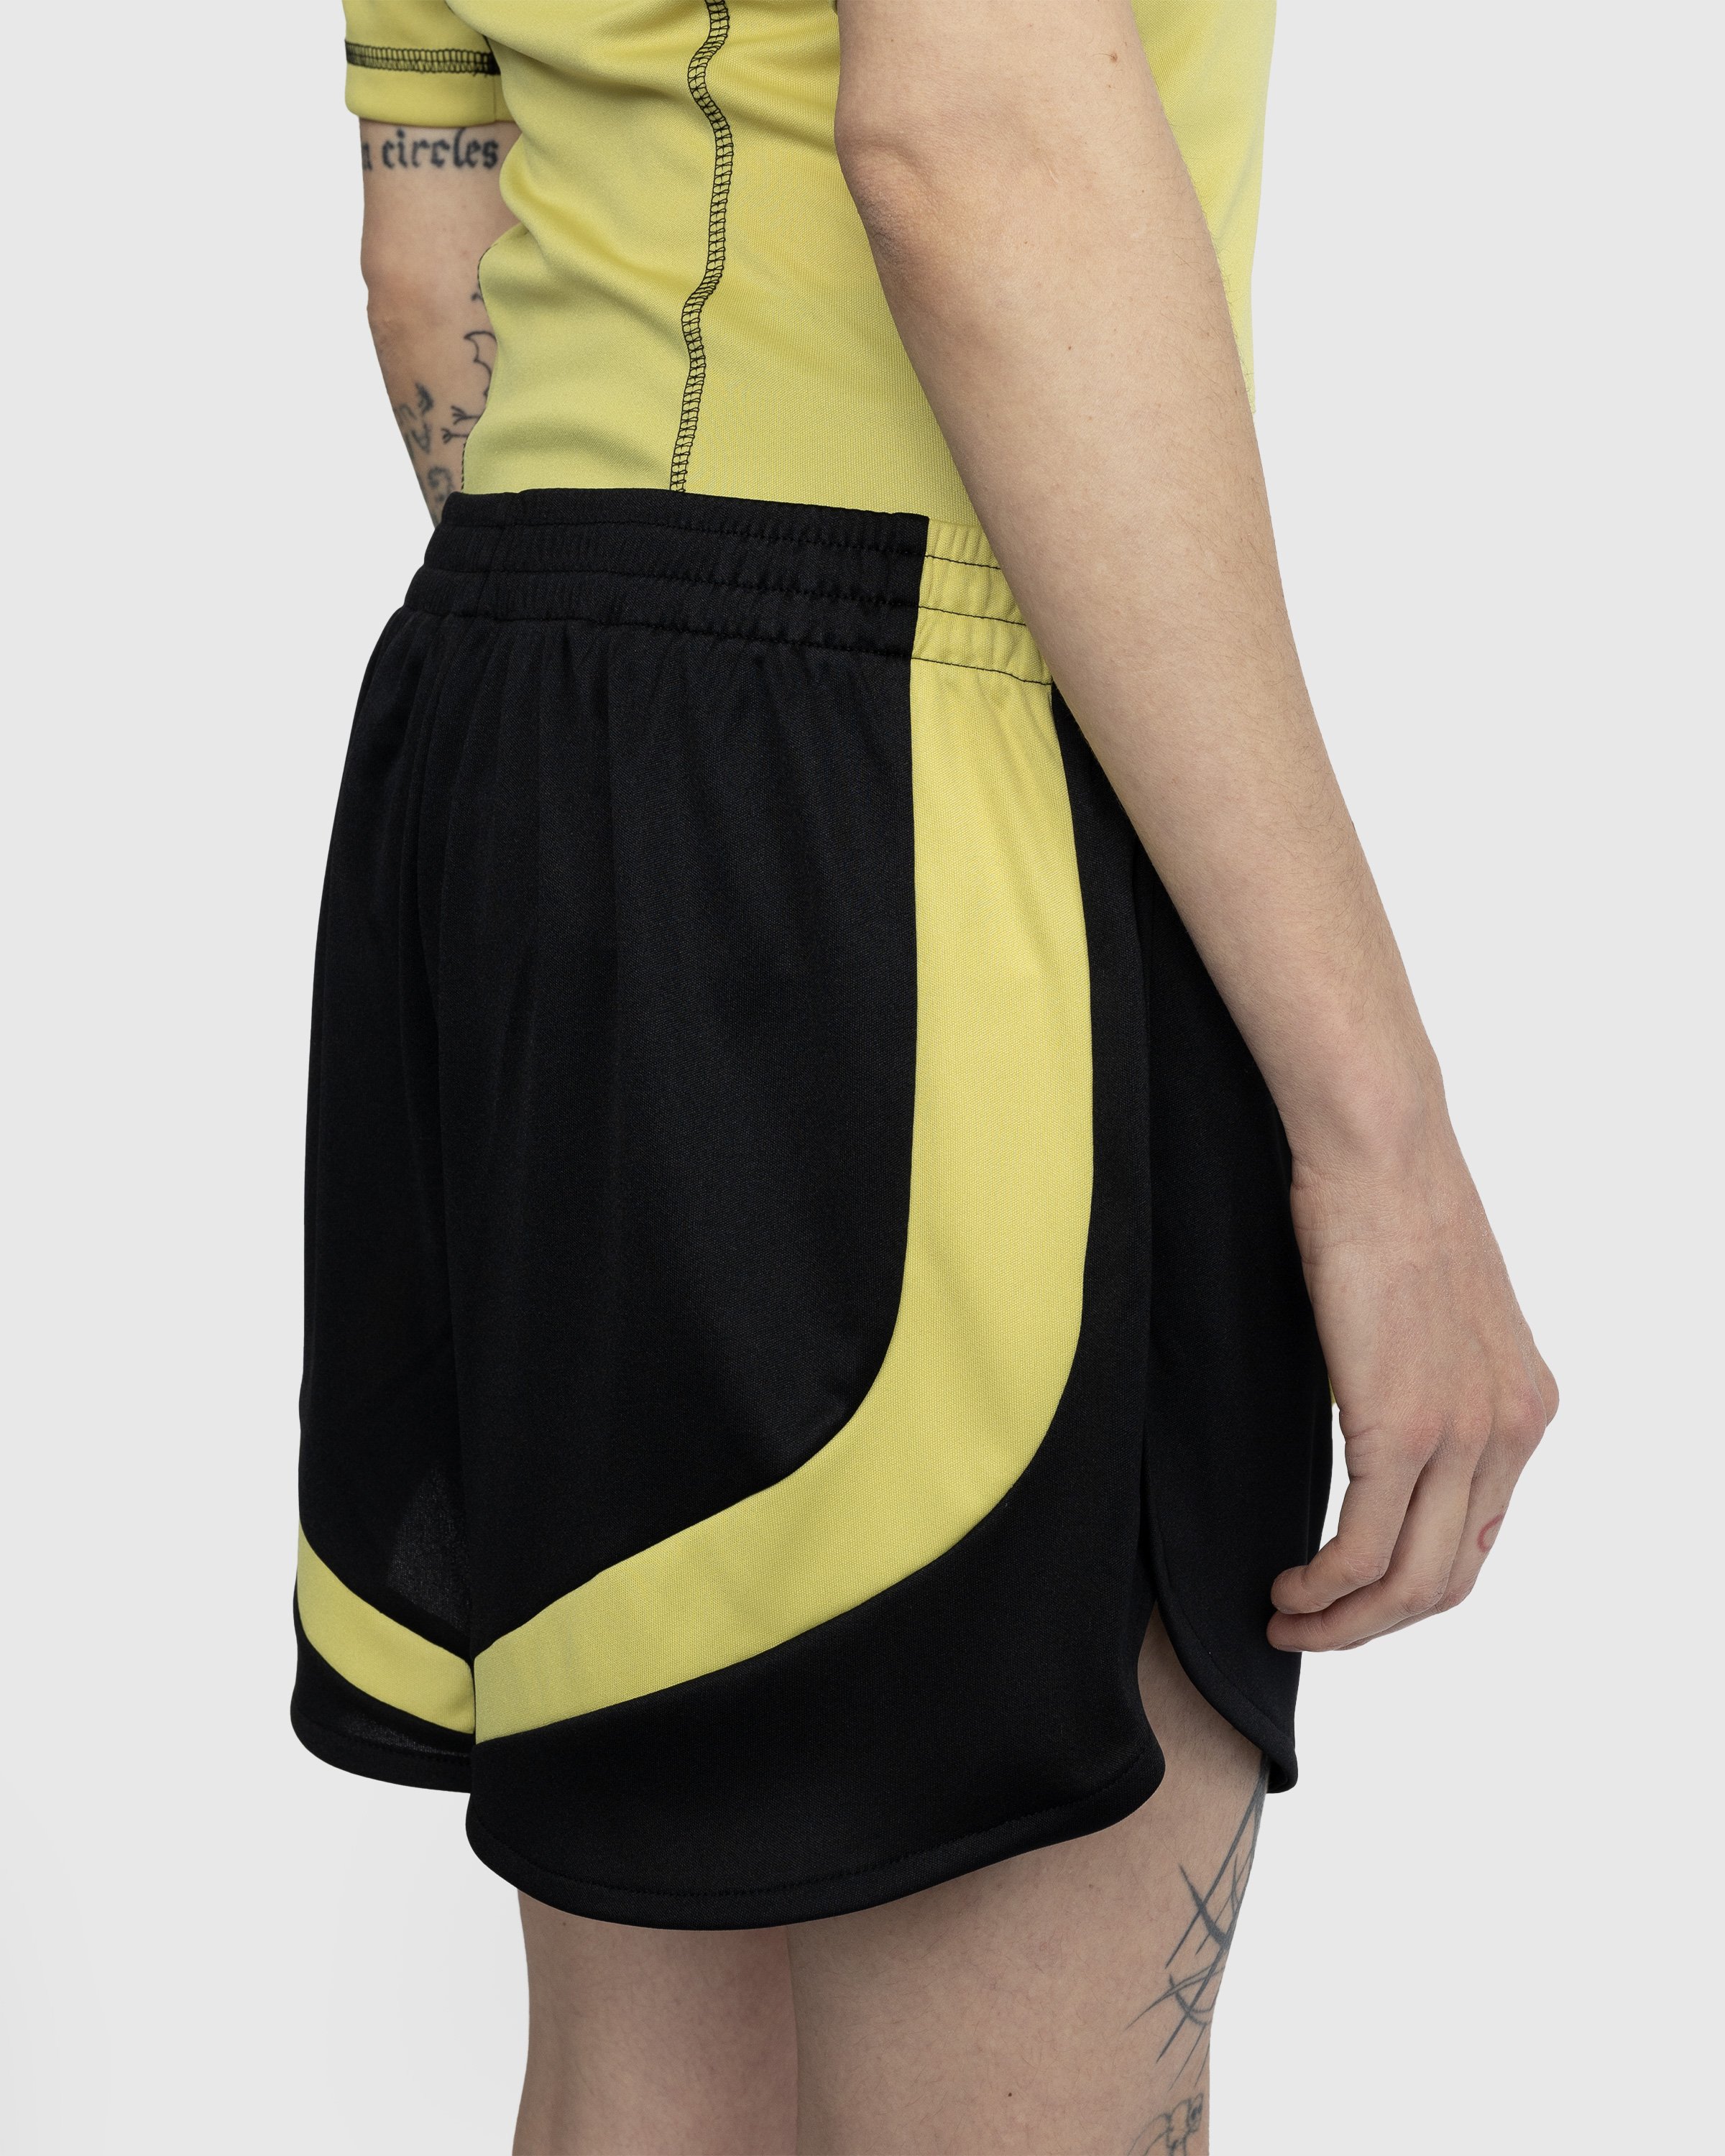 Martine Rose - Football Shorts Black - Clothing - Black - Image 5